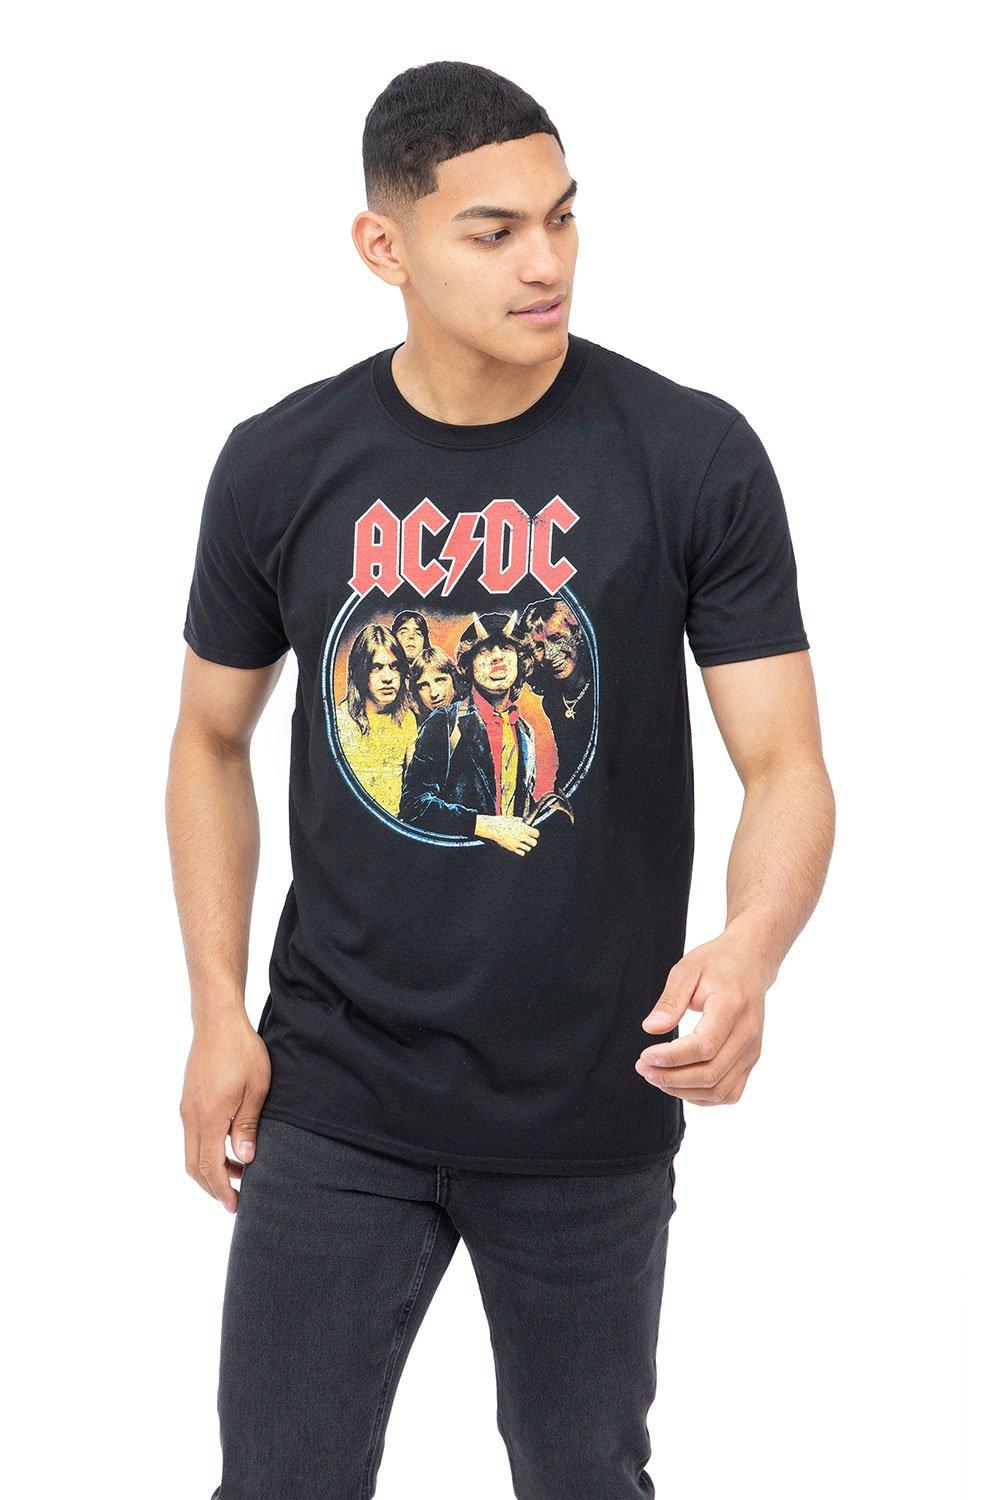 79 Хлопковая футболка AC/DC, черный популярная музыкальная рок группа ac dc памятная монета из сплава настольное украшение поделки фотоподарок